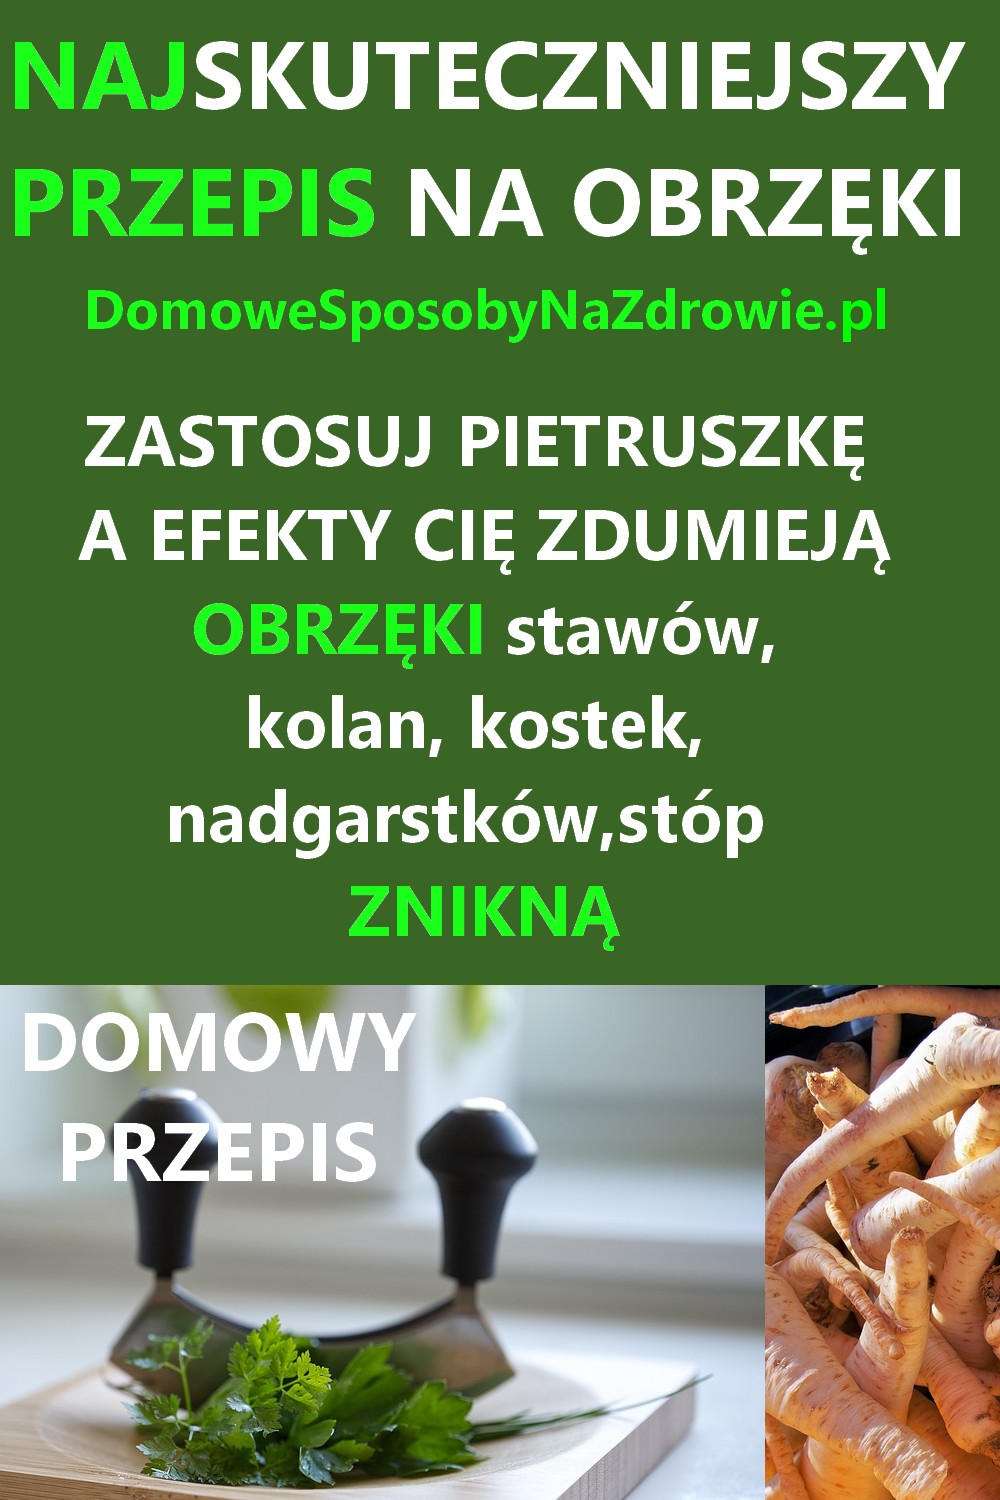 DomoweSposobyNaZdrowie.pl-na-obrzeki-pietruszka